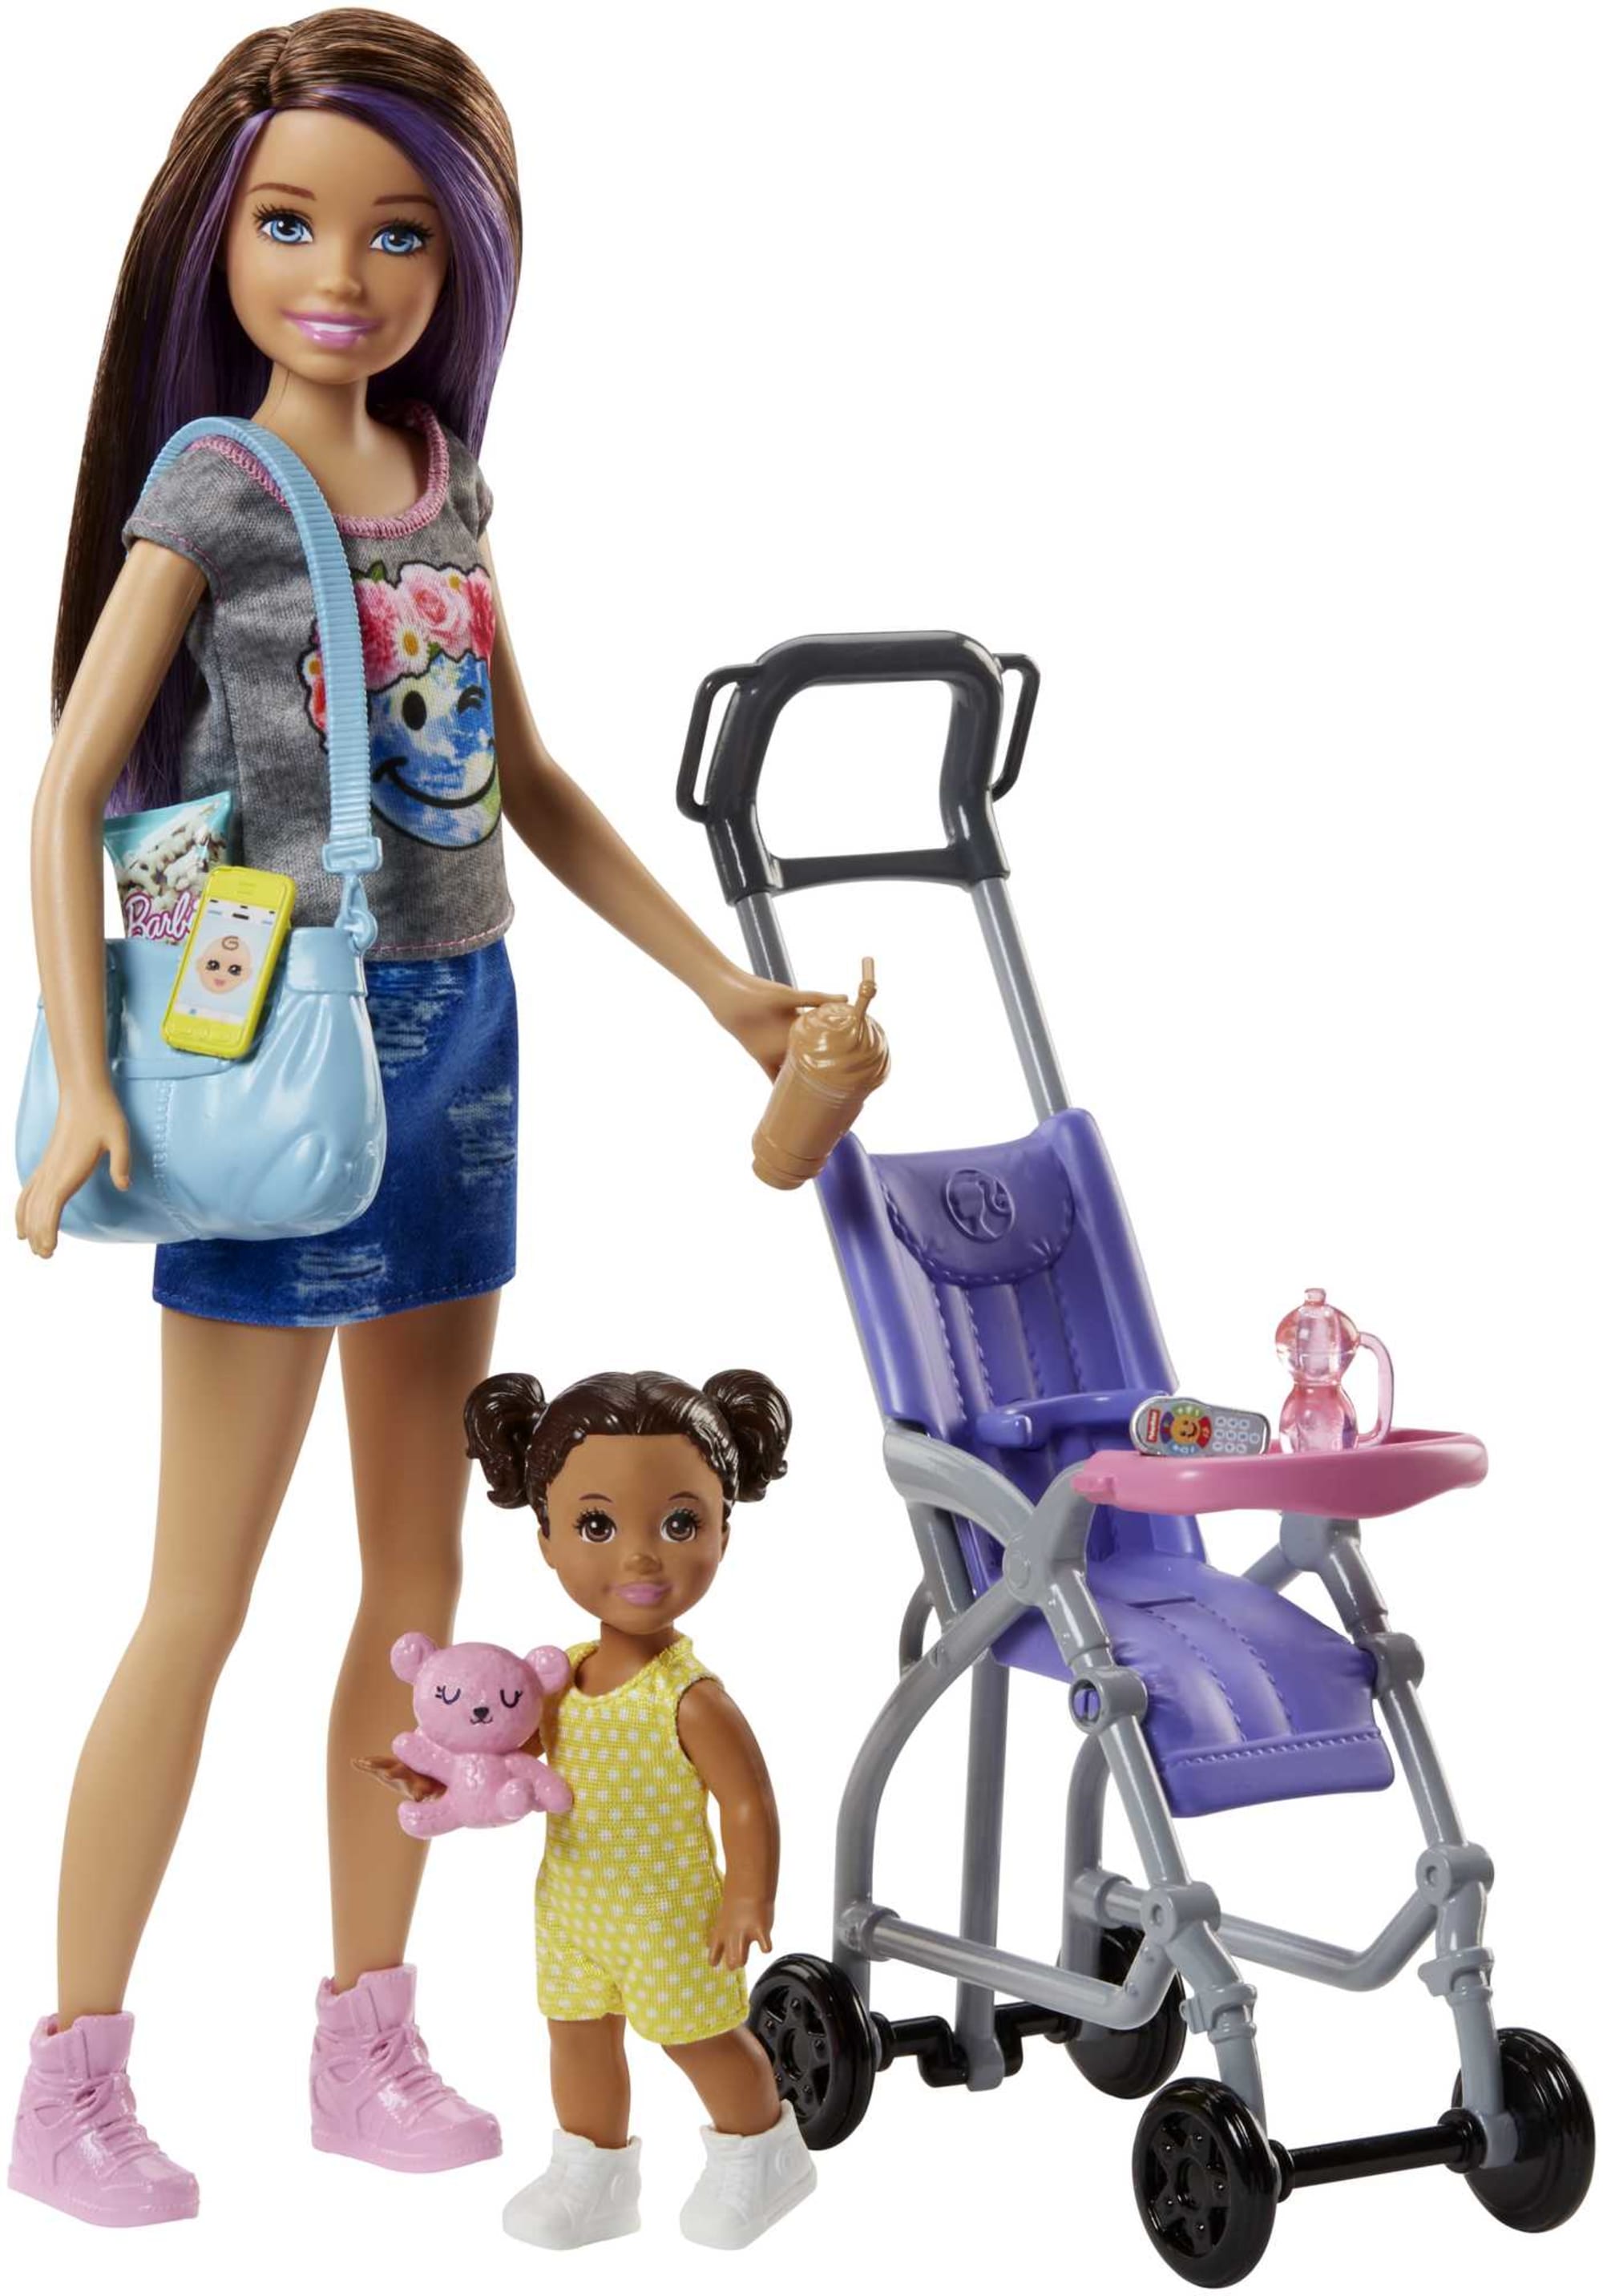 Eigenaardig Zeep Insecten tellen Barbie Skipper Babysitters Inc. Doll FJB00 | Mattel